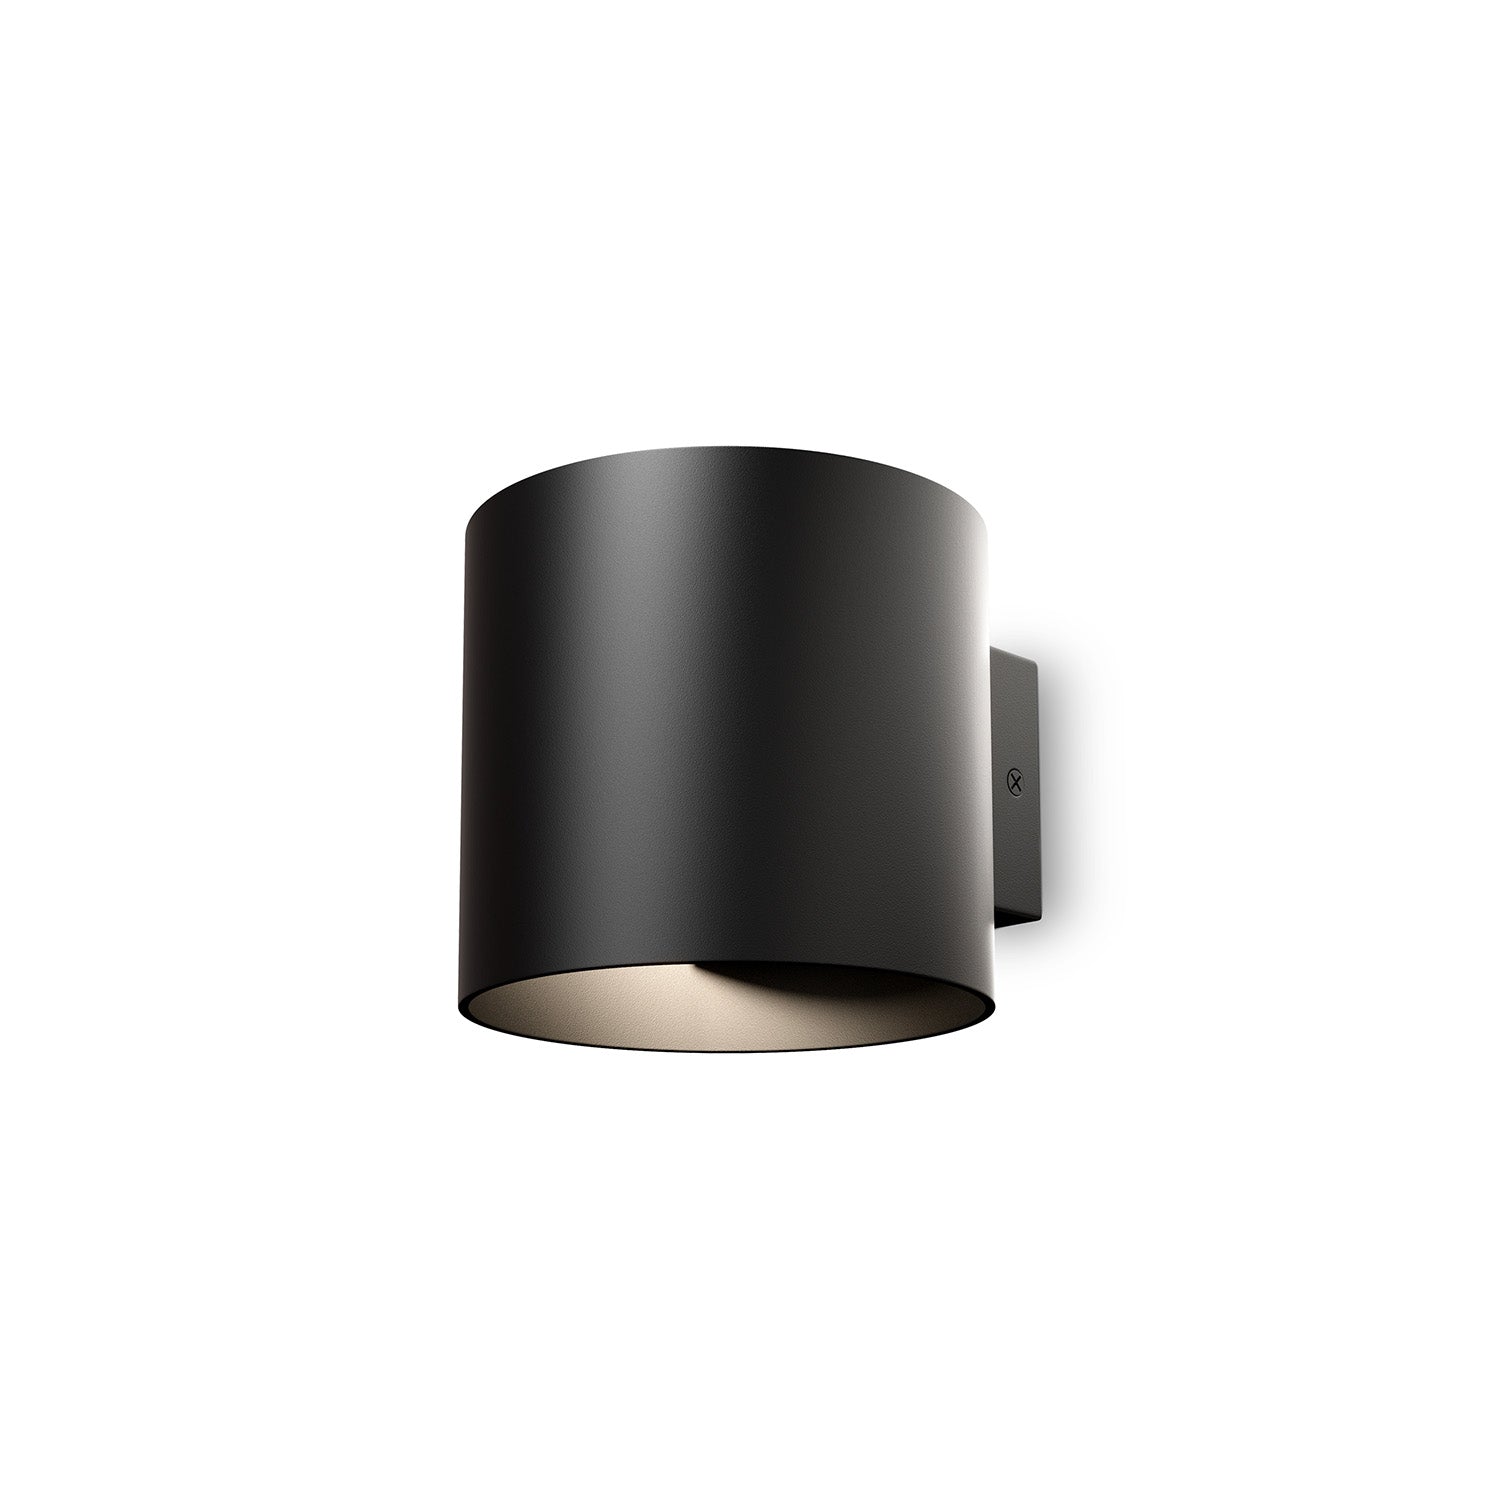 ROND – Zylindrische Design-Wandleuchte, schwarz, weiß oder gold